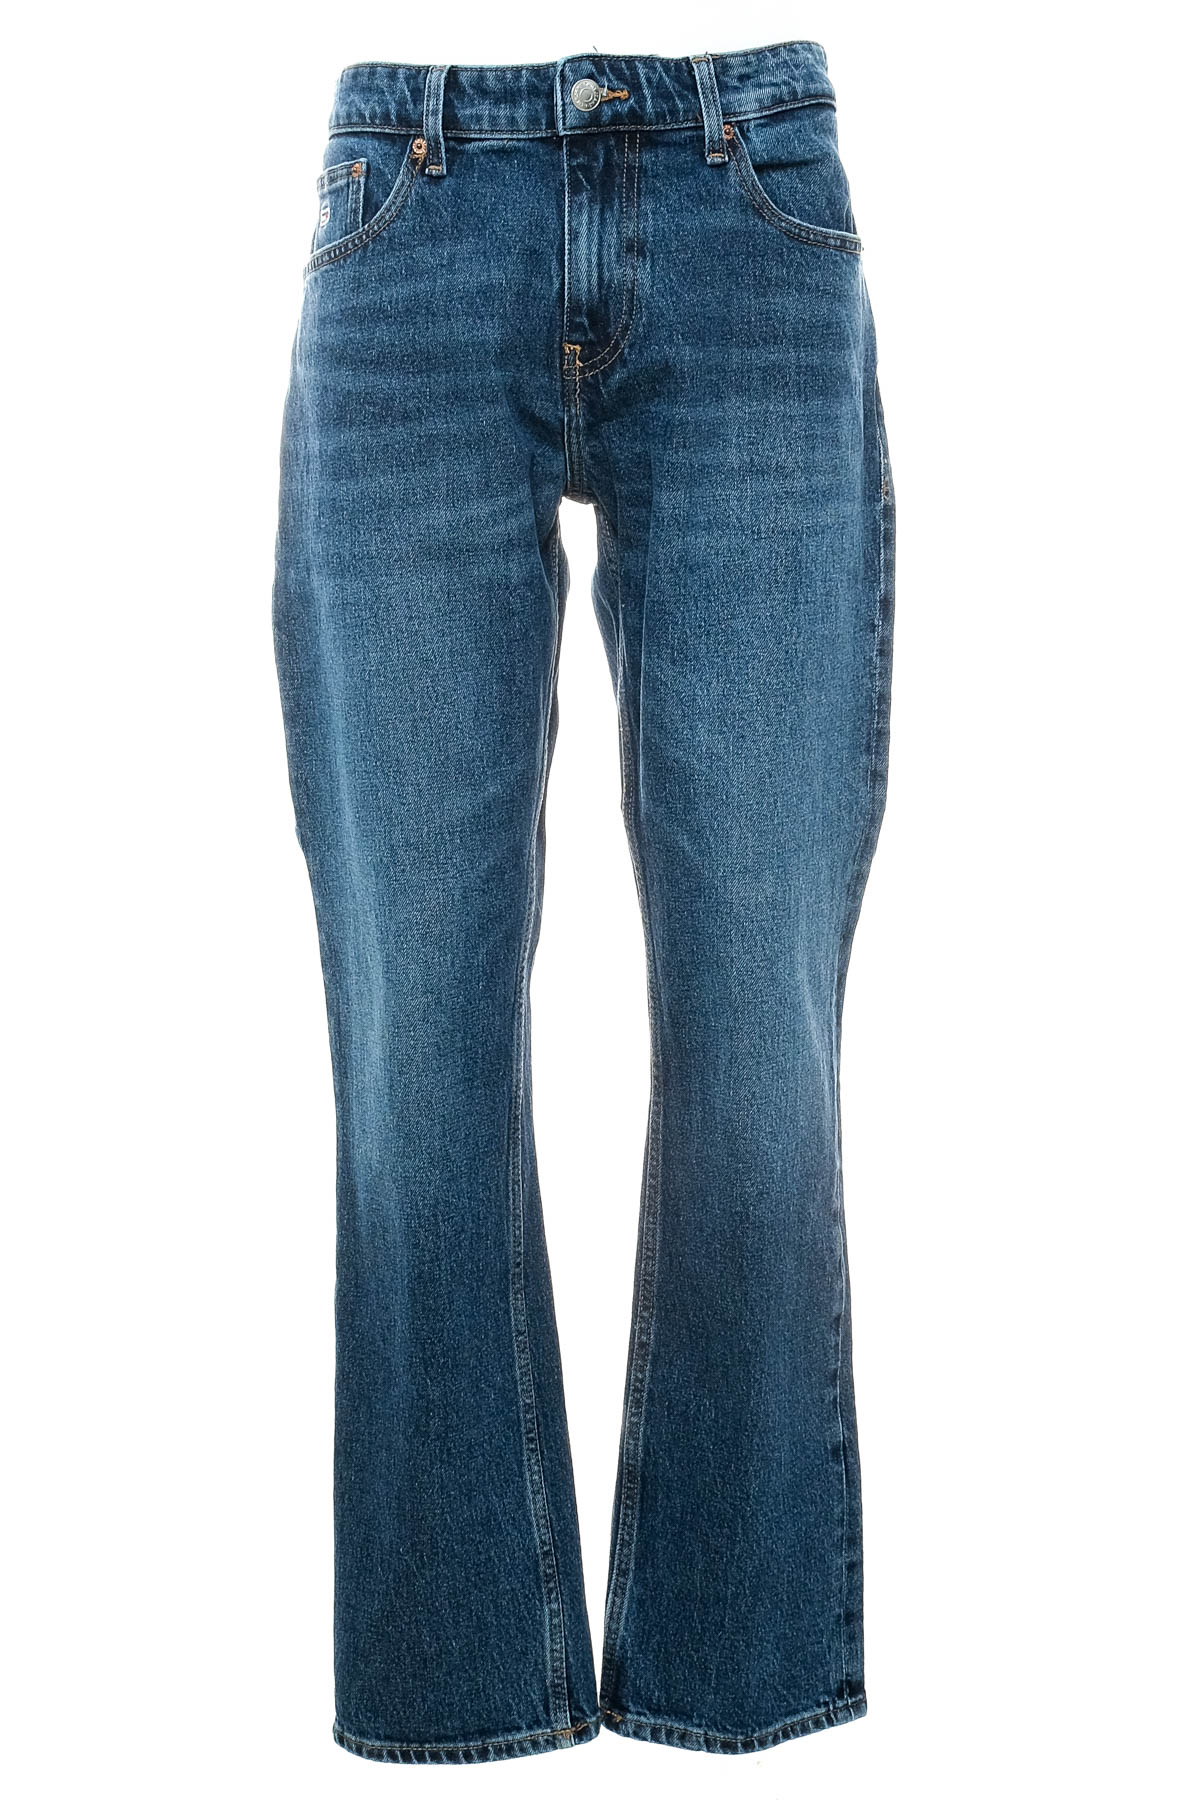 Jeans pentru bărbăți - TOMMY JEANS - 0